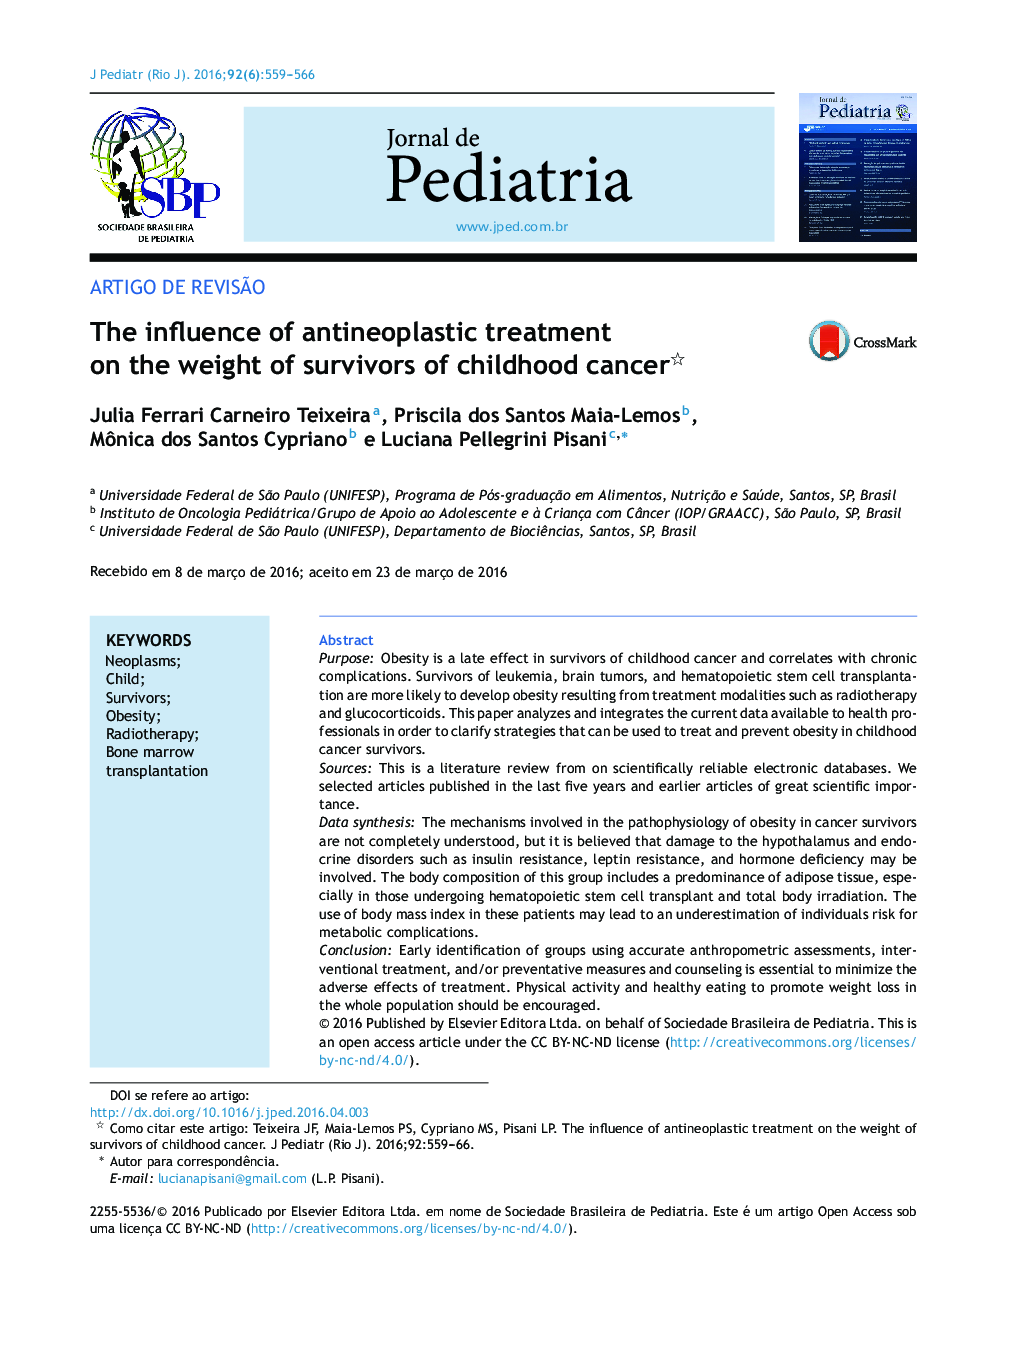 تأثیر درمان کم کاری تیروئید بر وزن بازماندگان سرطان دوران کودکی 